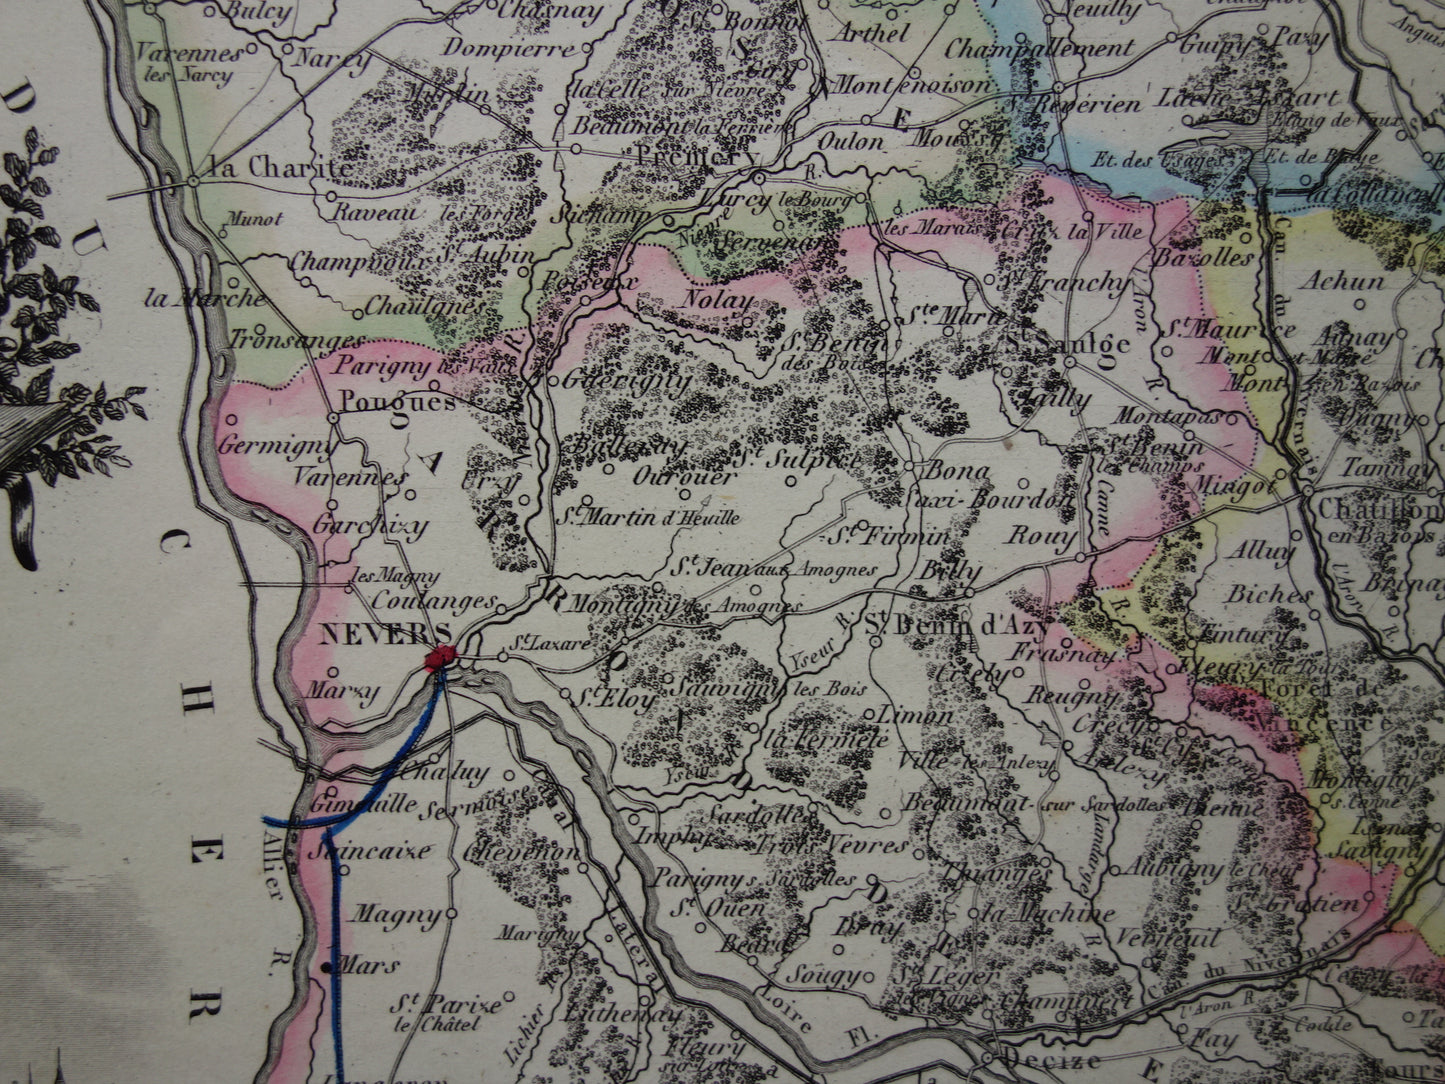 Oude kaart van NIEVRE departement in Frankrijk uit 1856 originele antieke handgekleurde landkaart Nevers Decize Cosne-Cours-sur-Loire